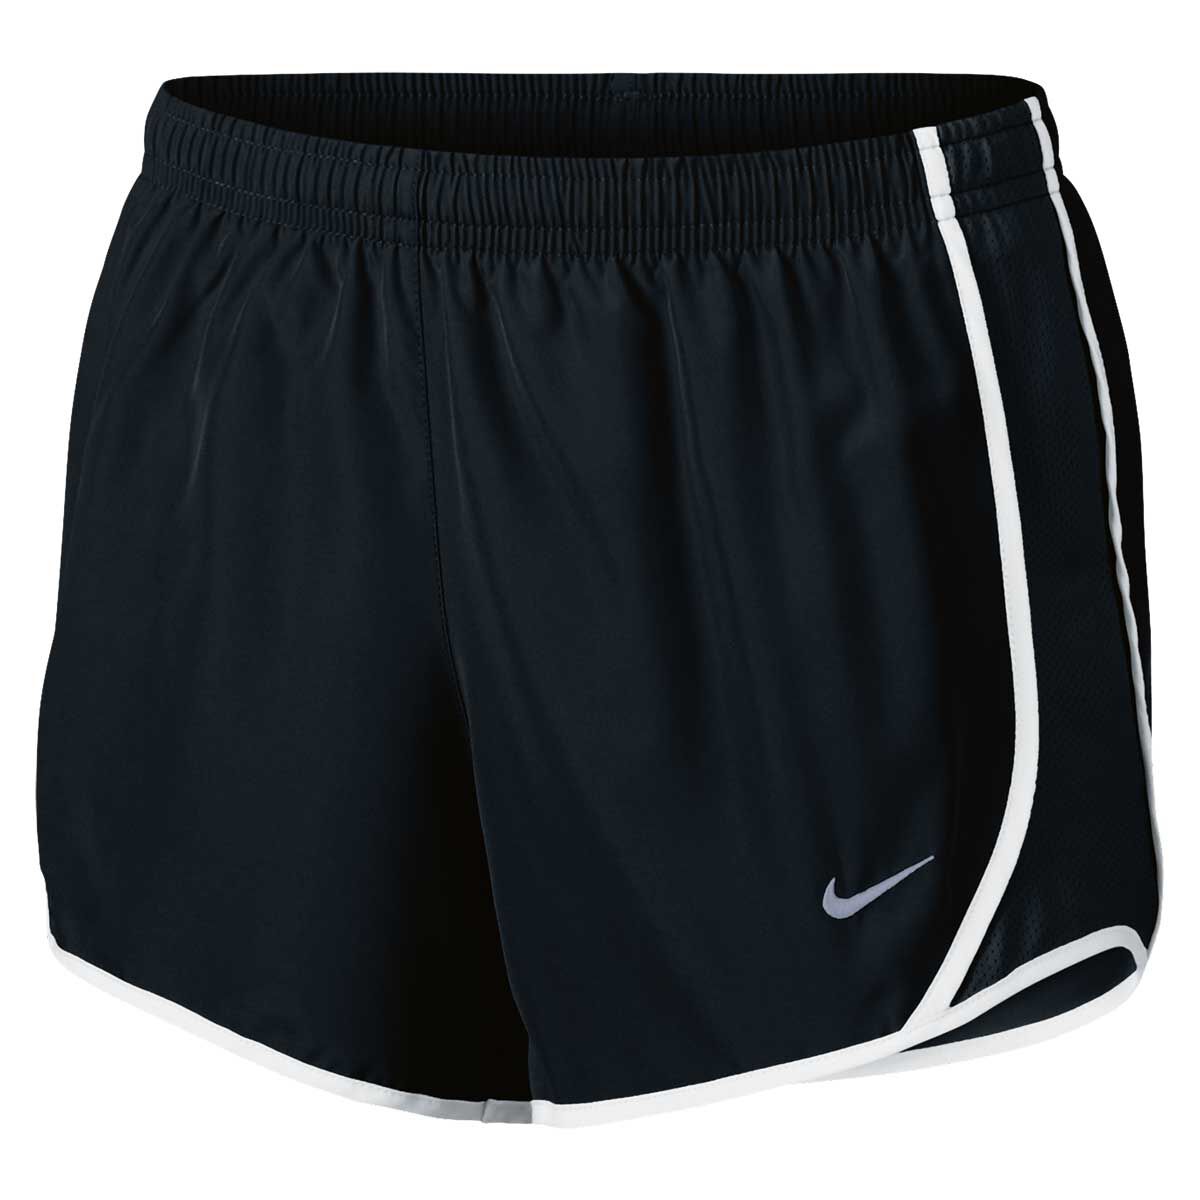 W2C Nike 5 inch inseam shorts like this? thank you 🙏🏾 : r/FashionReps